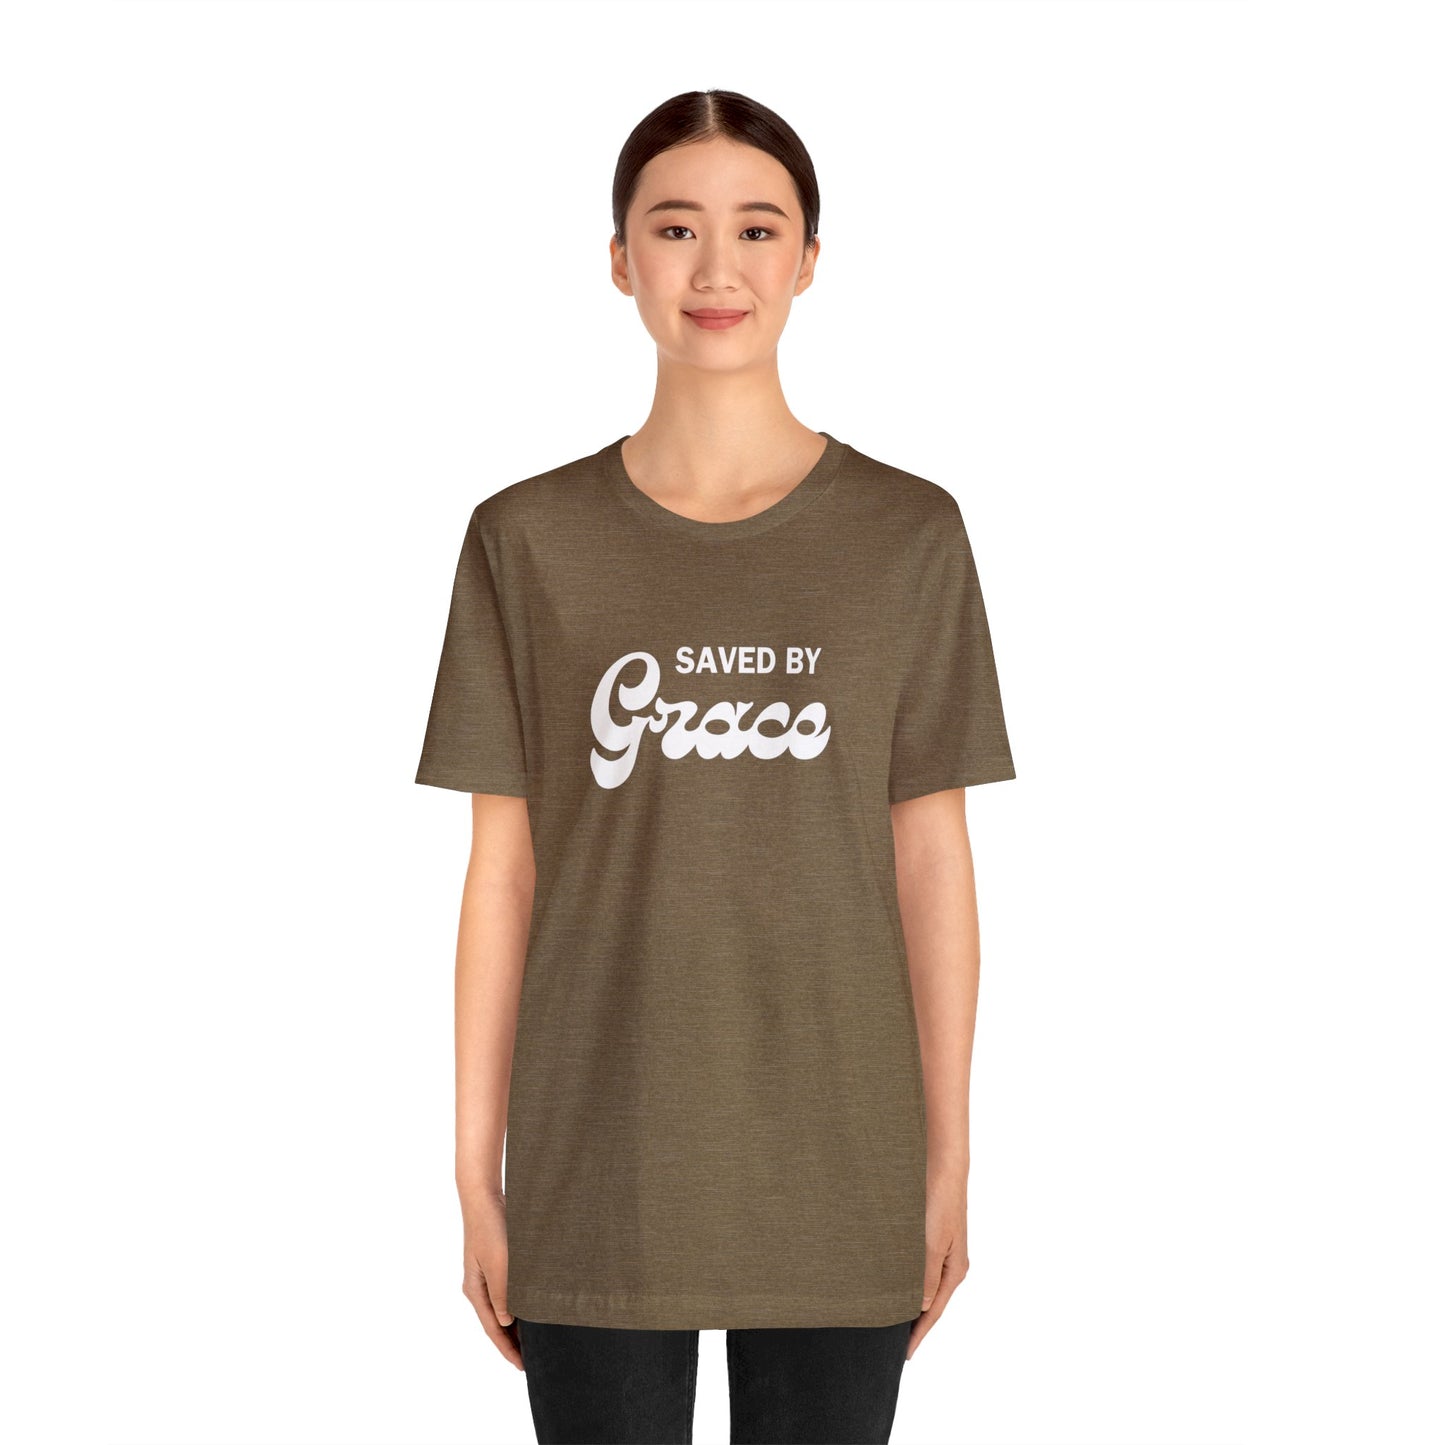 "Saved by Grace" Faith T-Shirt